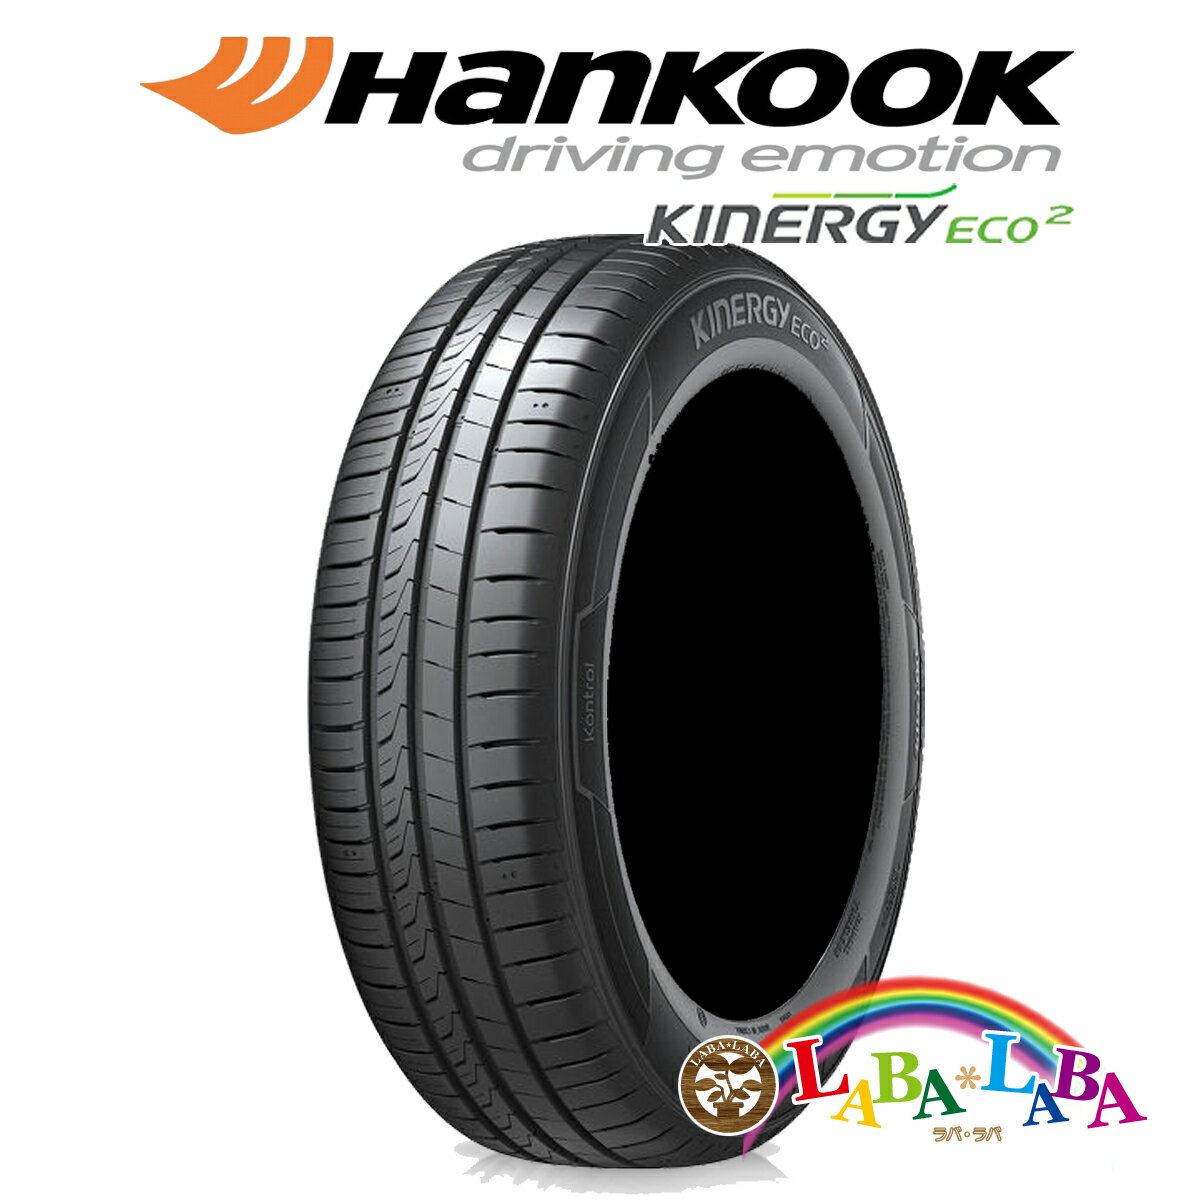 HANKOOK ハンコック Kinergy Eco 2 キナジー エコ K435 165/45R15 68V サマータイヤ 4本セット